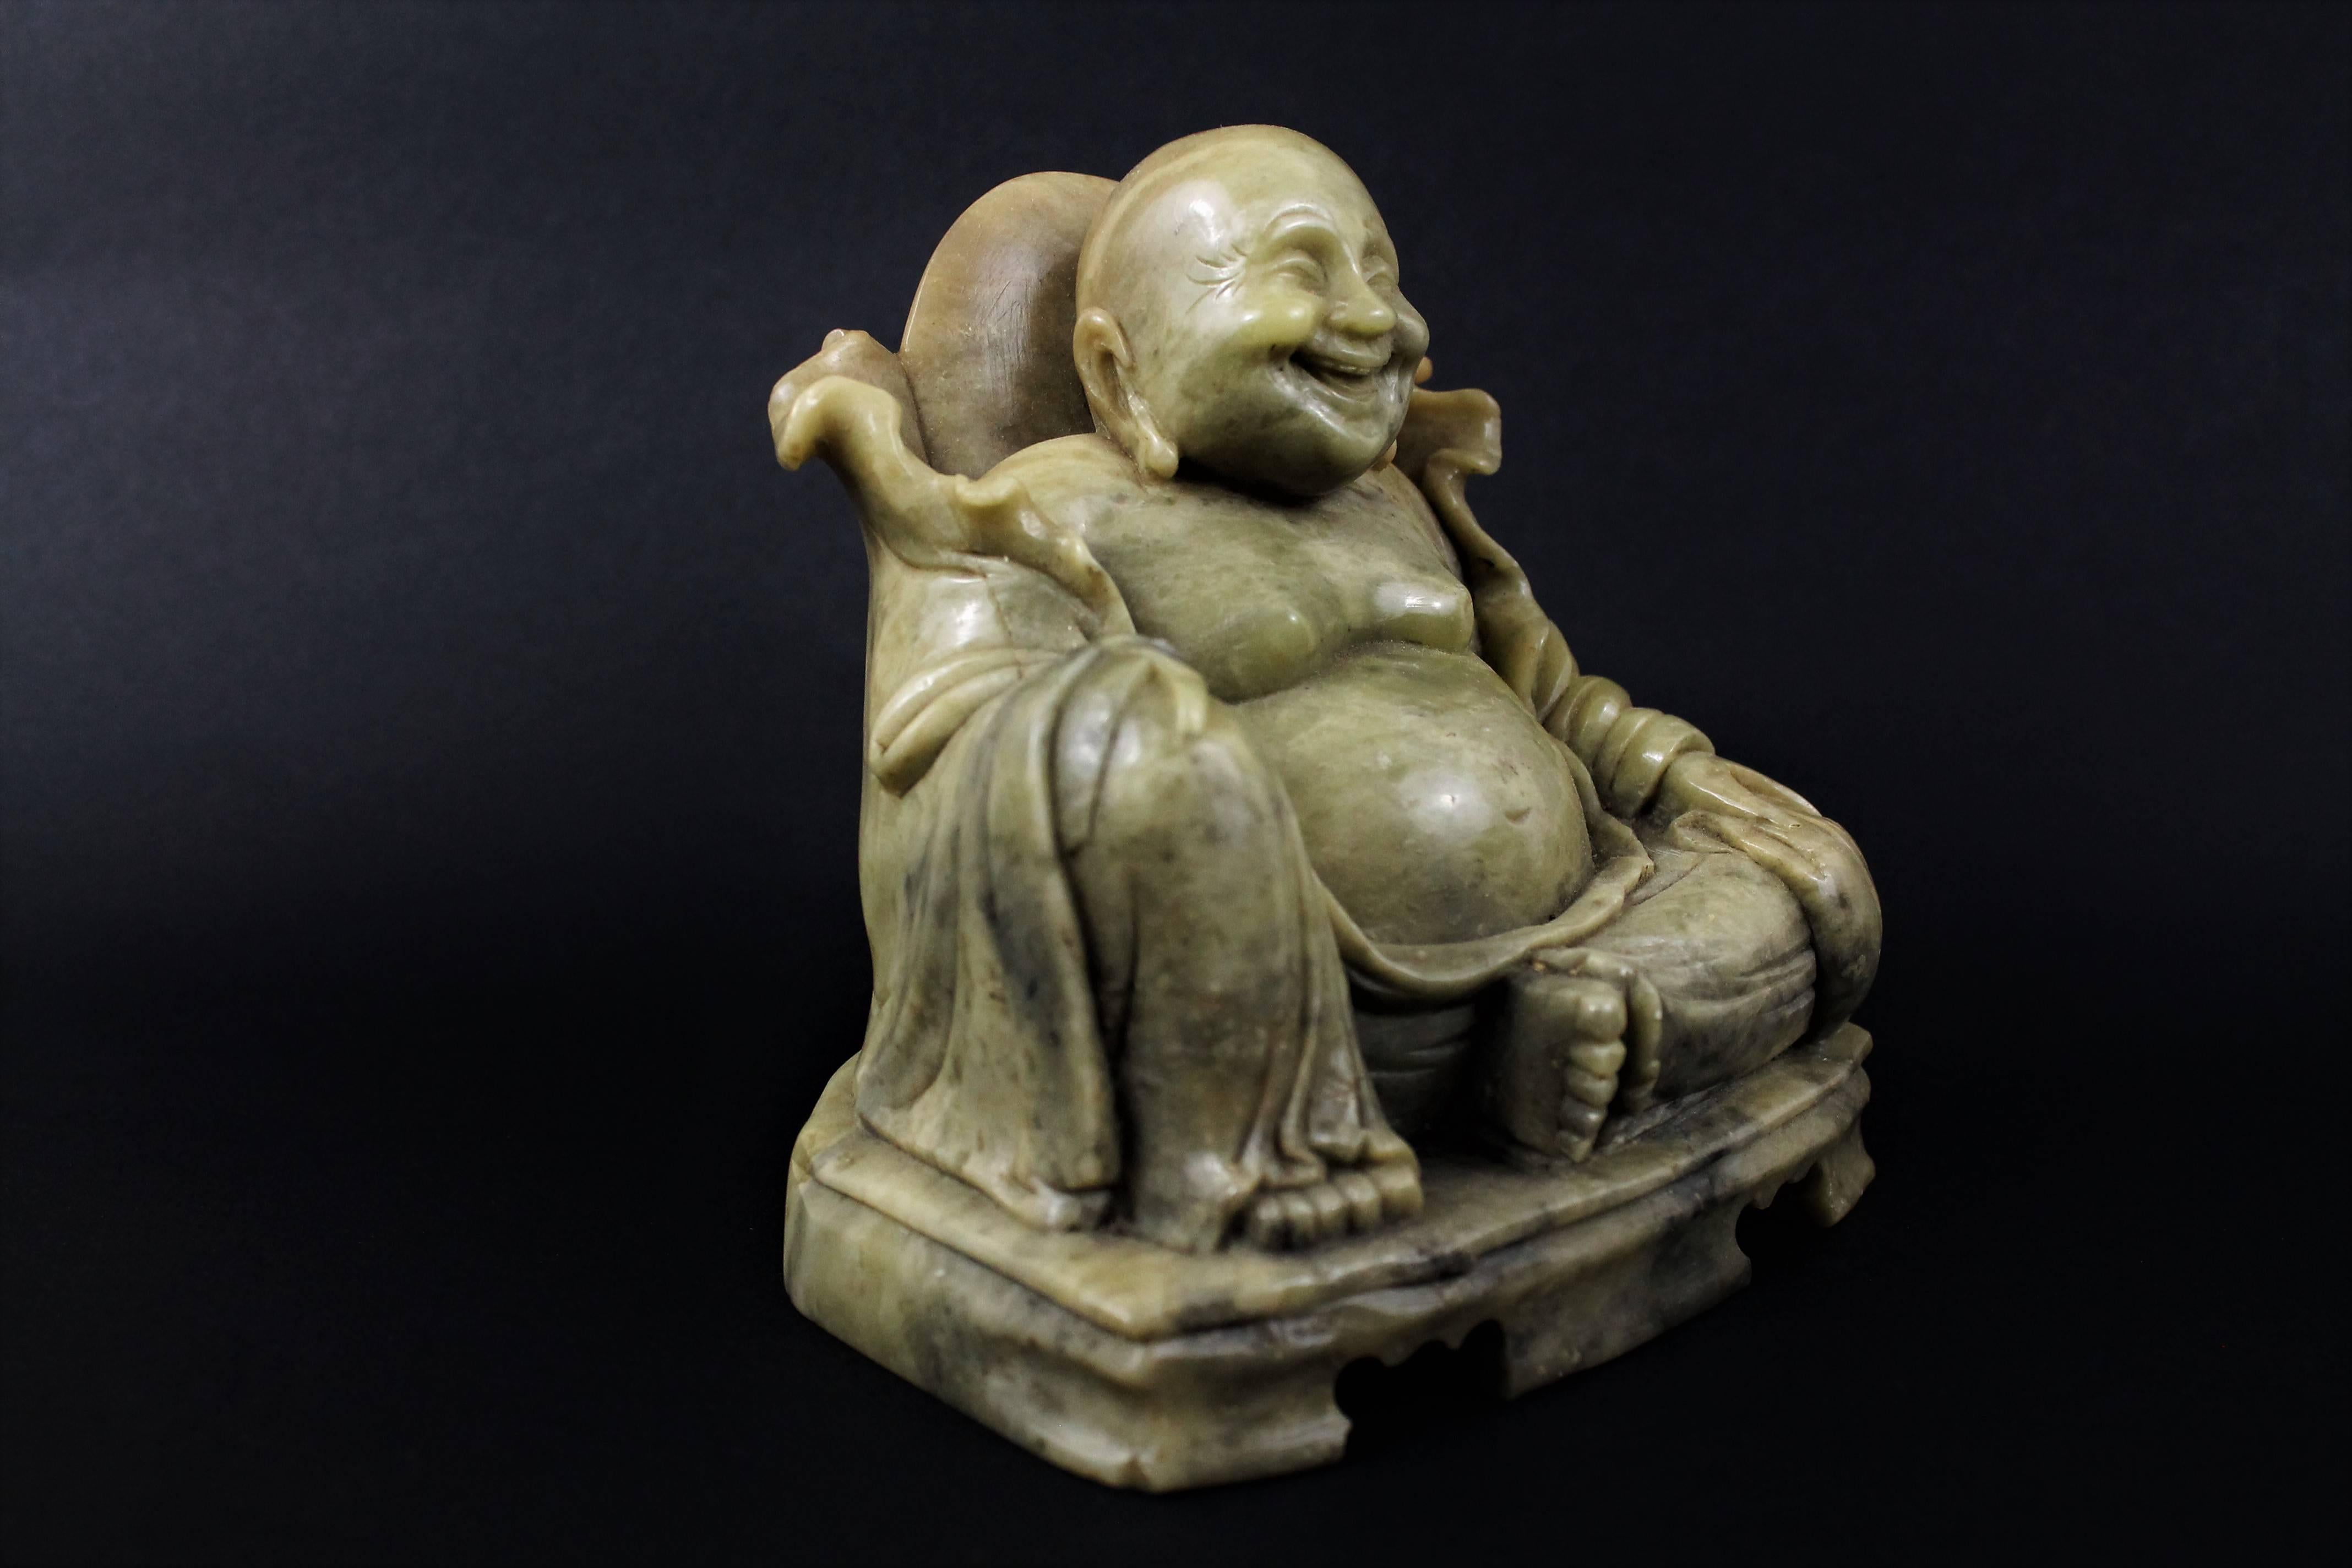 Chinese Chine Budai Fat Laughing Buddha, Soapstone, Early 20th Century